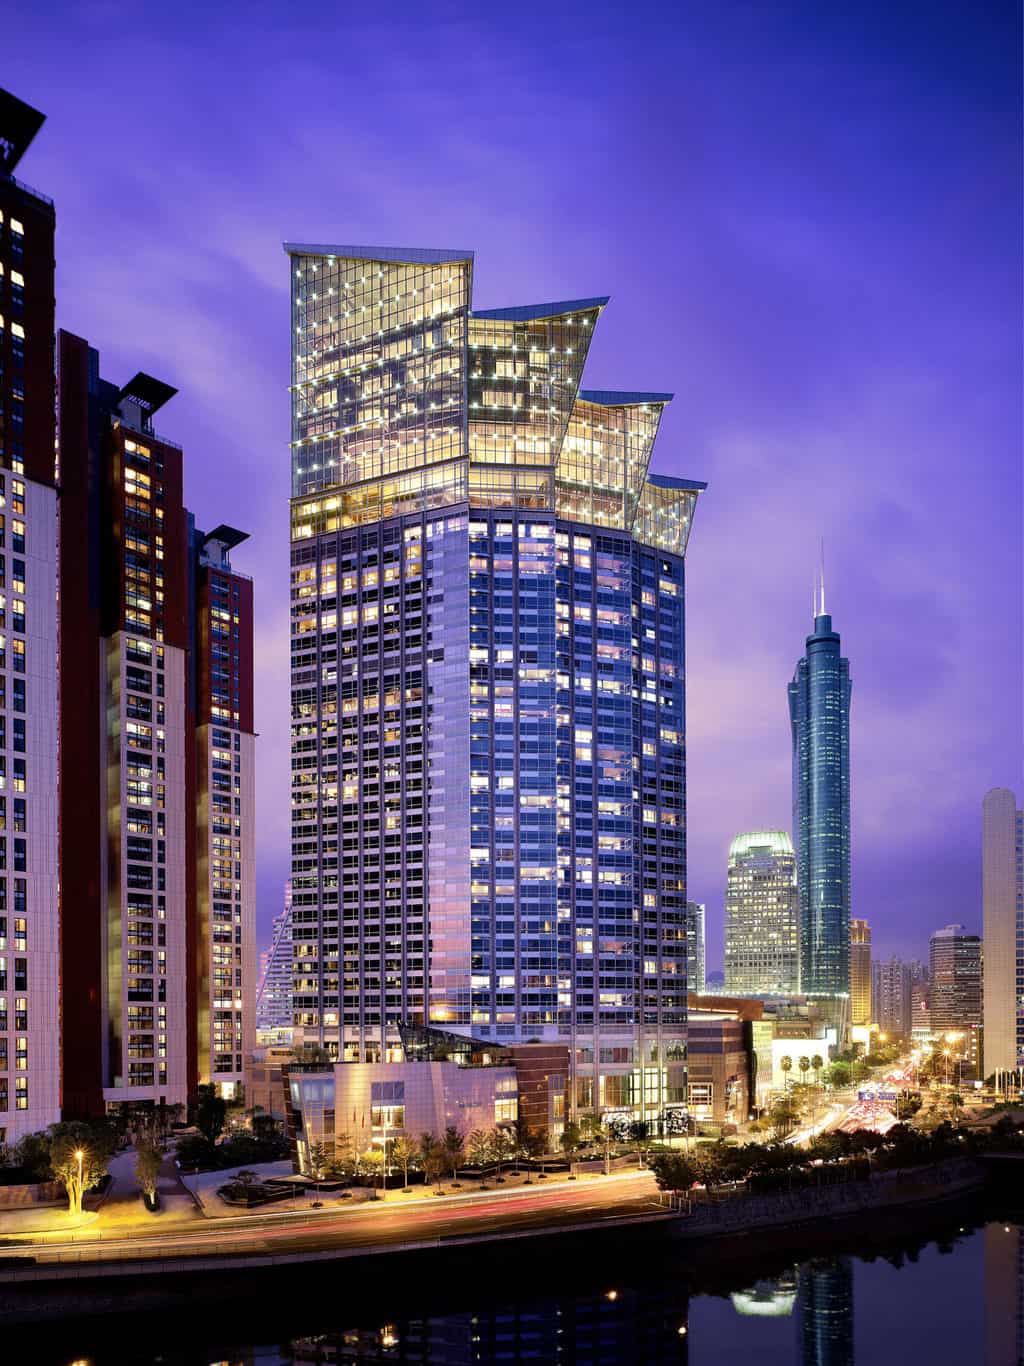 Featured image for “Grand Hyatt Shenzhen”